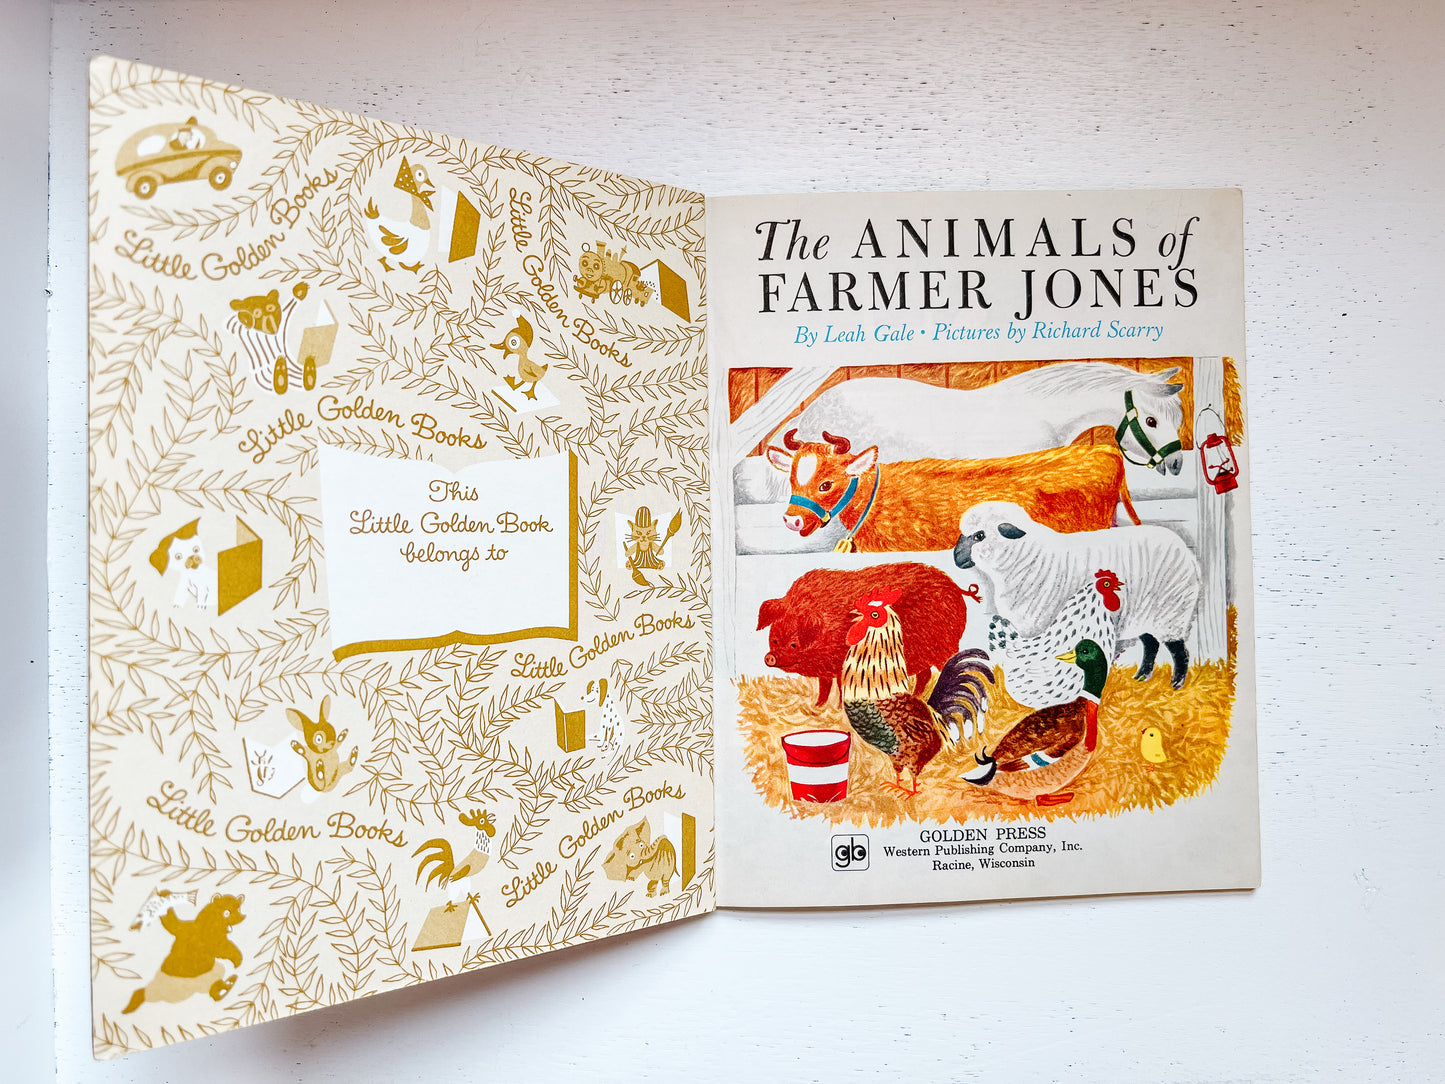 Little Golden Book “Animals of Farmer Jones”